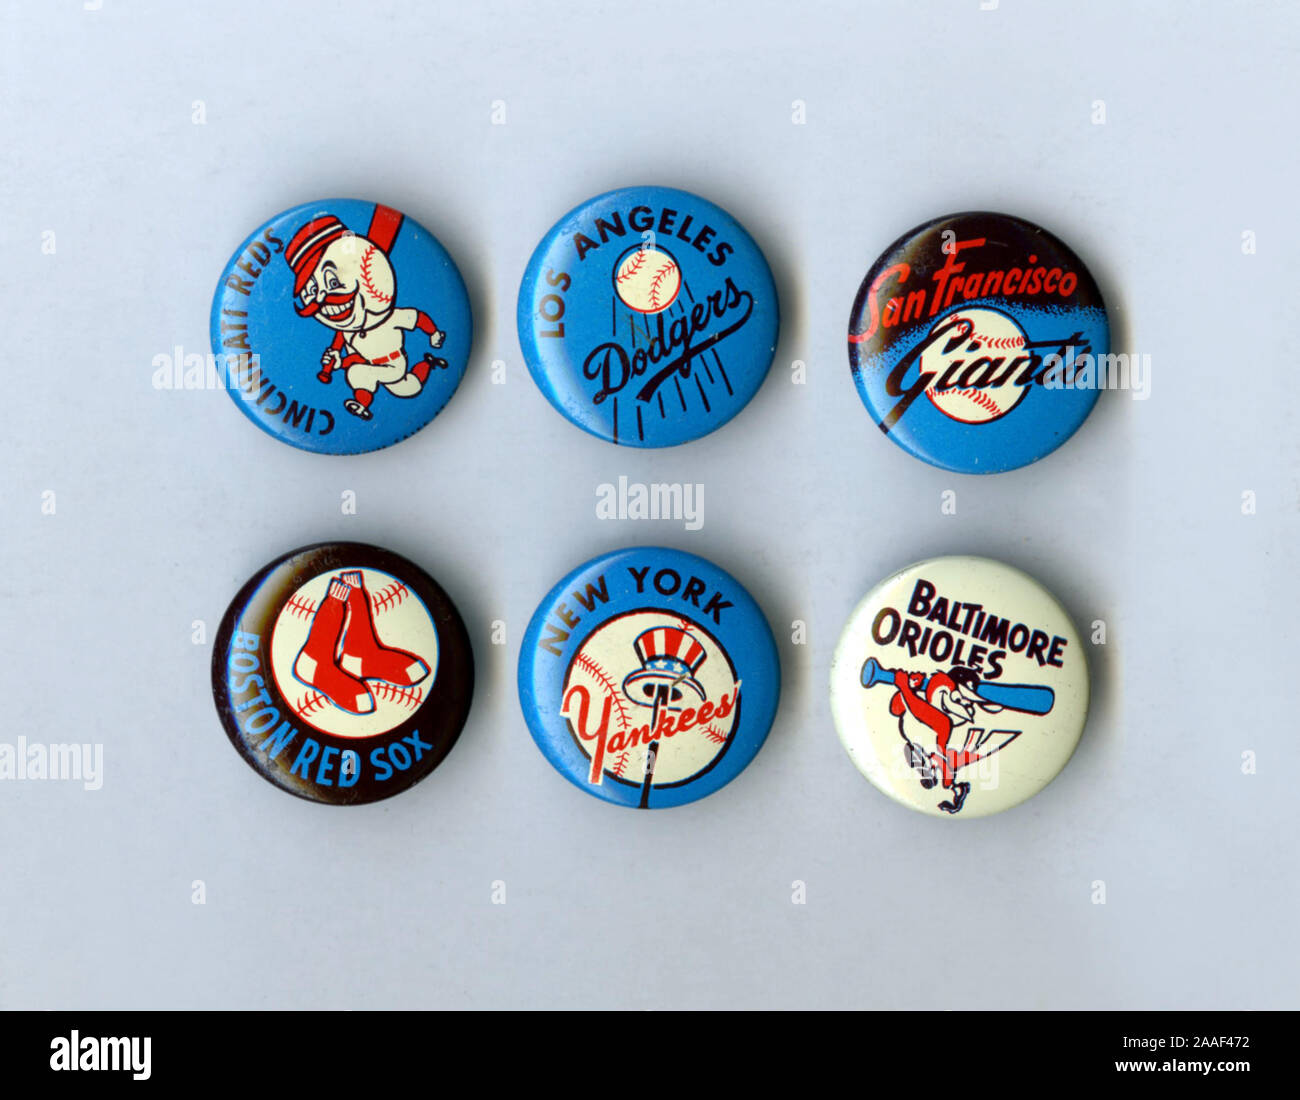 Piccoli souvenir da collezione di pulsanti che raffigurano i logo di Major League Baseball team di essi app[eared negli anni cinquanta-60's ser. Foto Stock